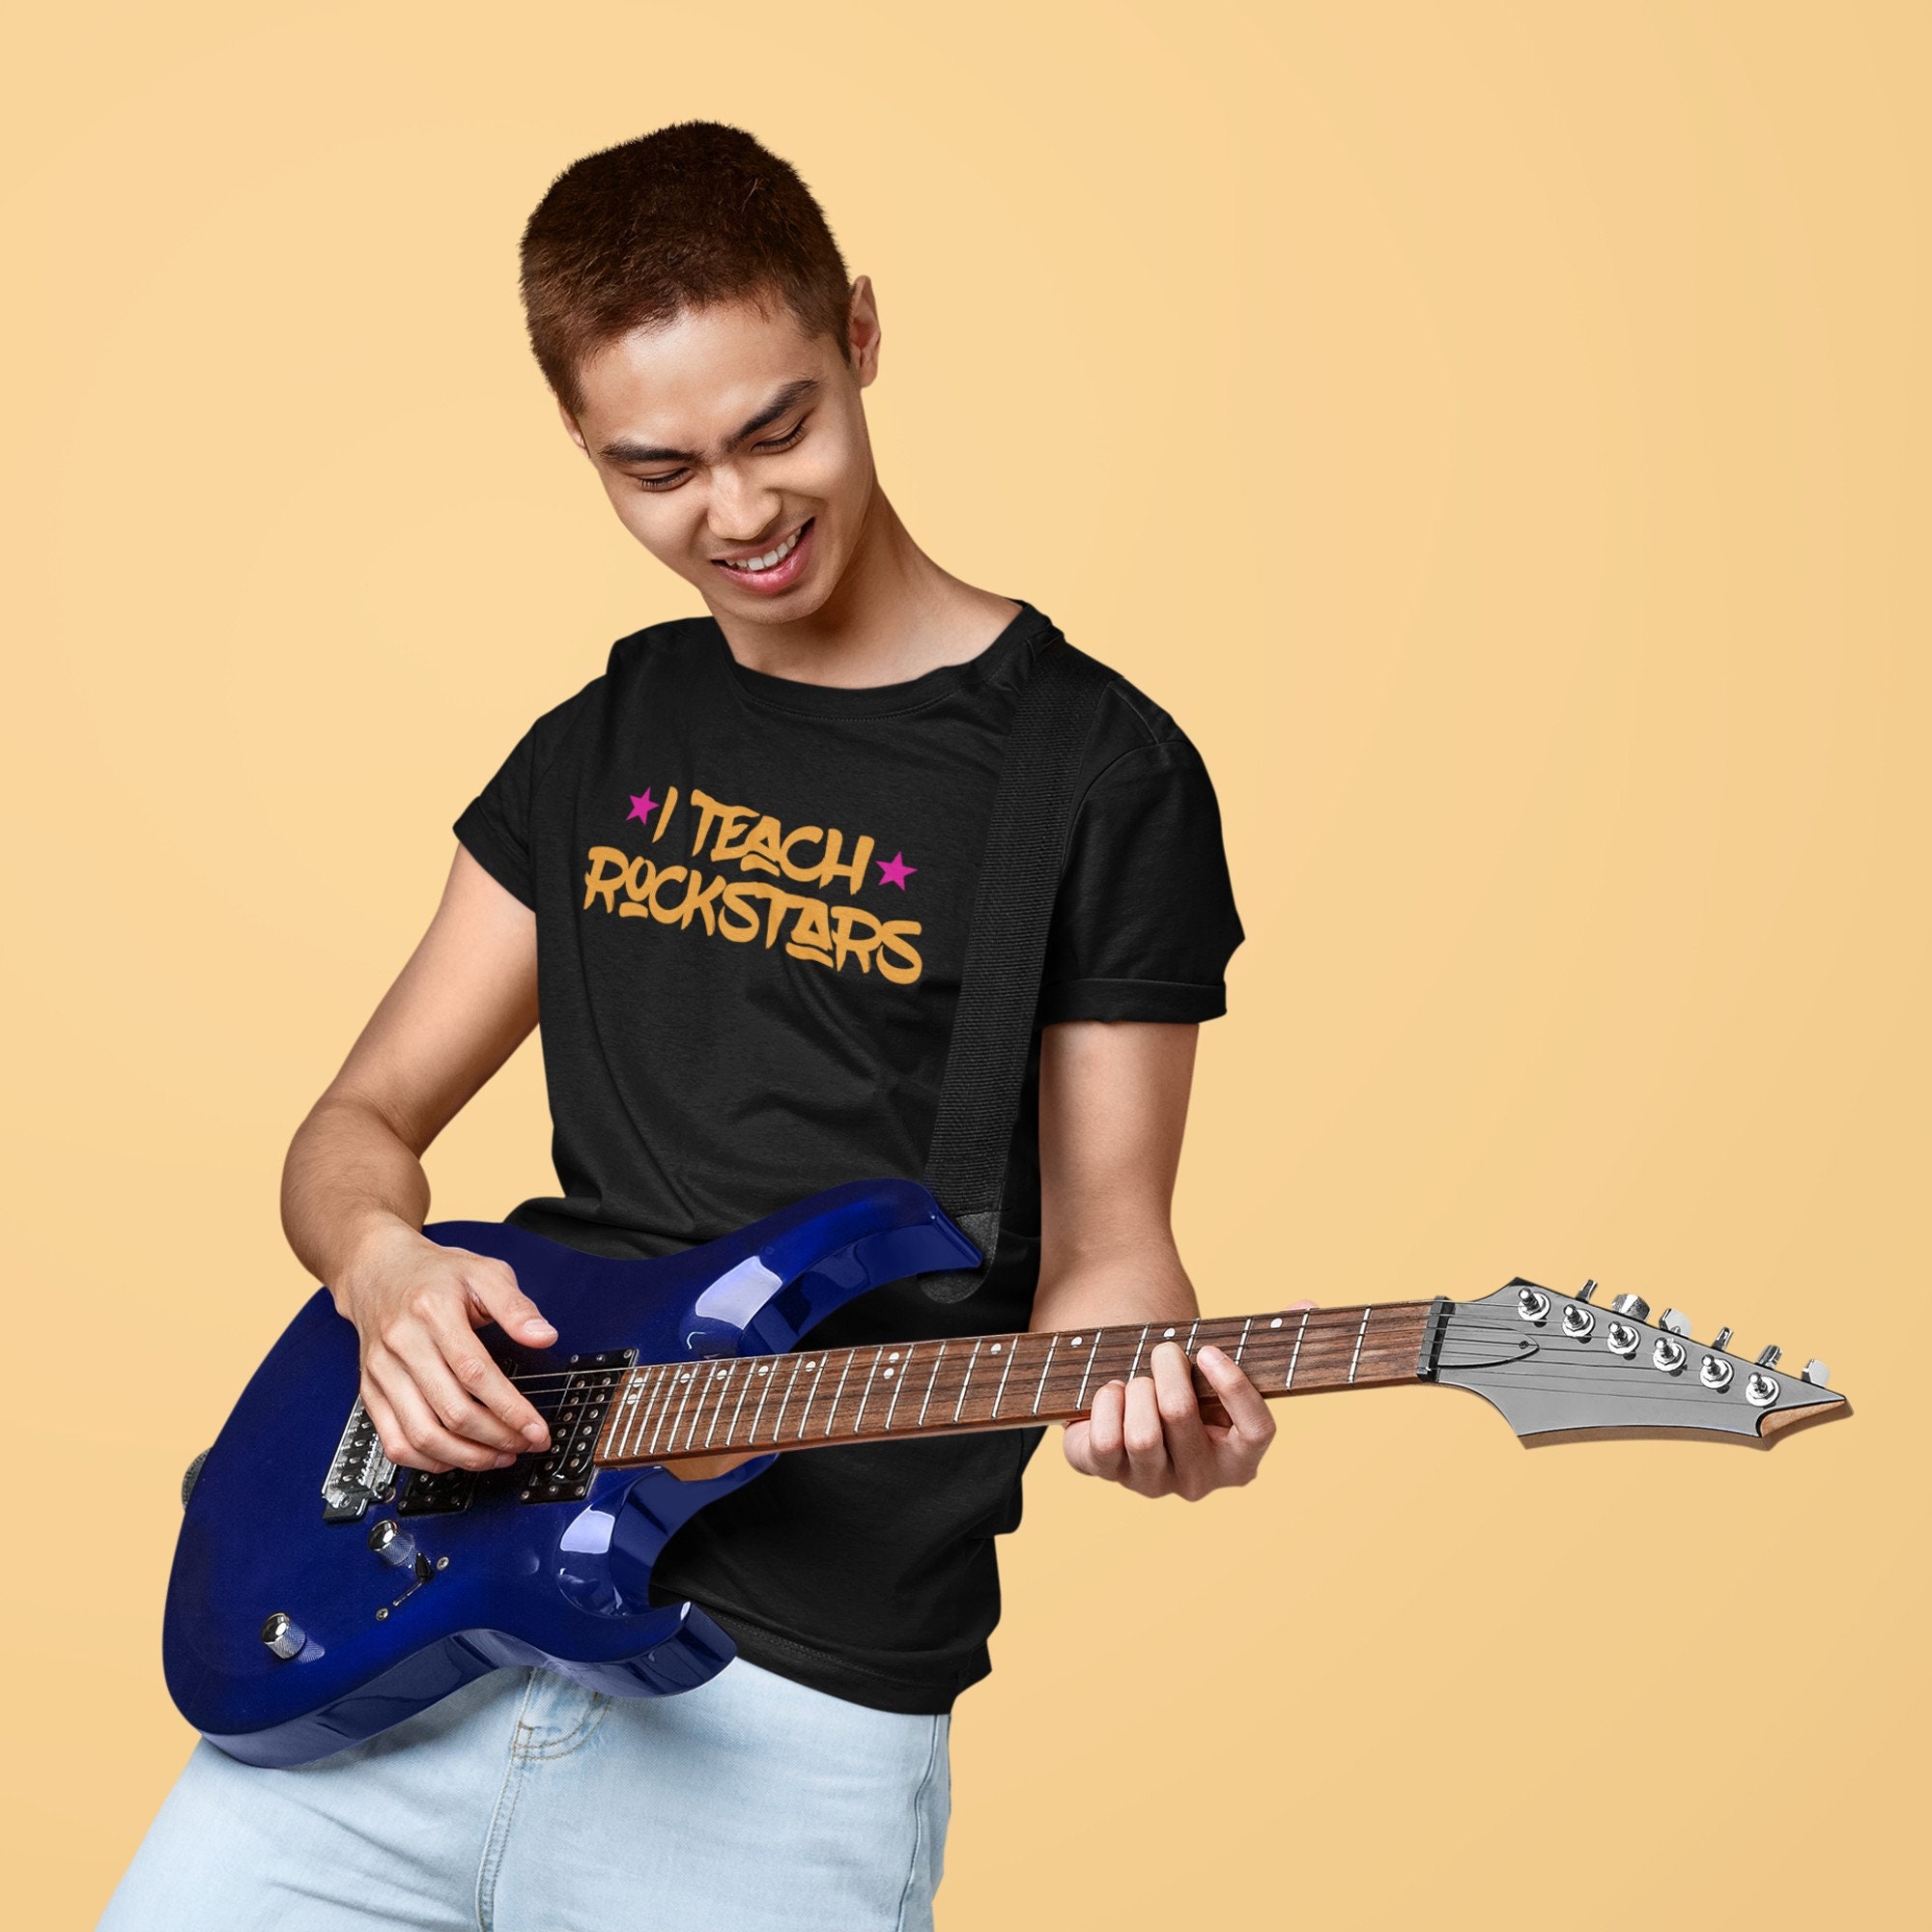 Musician shirt Music lover shirt Rockstar gift Rockstar tshirt I Teach Rockstars Music T-Shirt Music teacher shirt Music teacher gifts